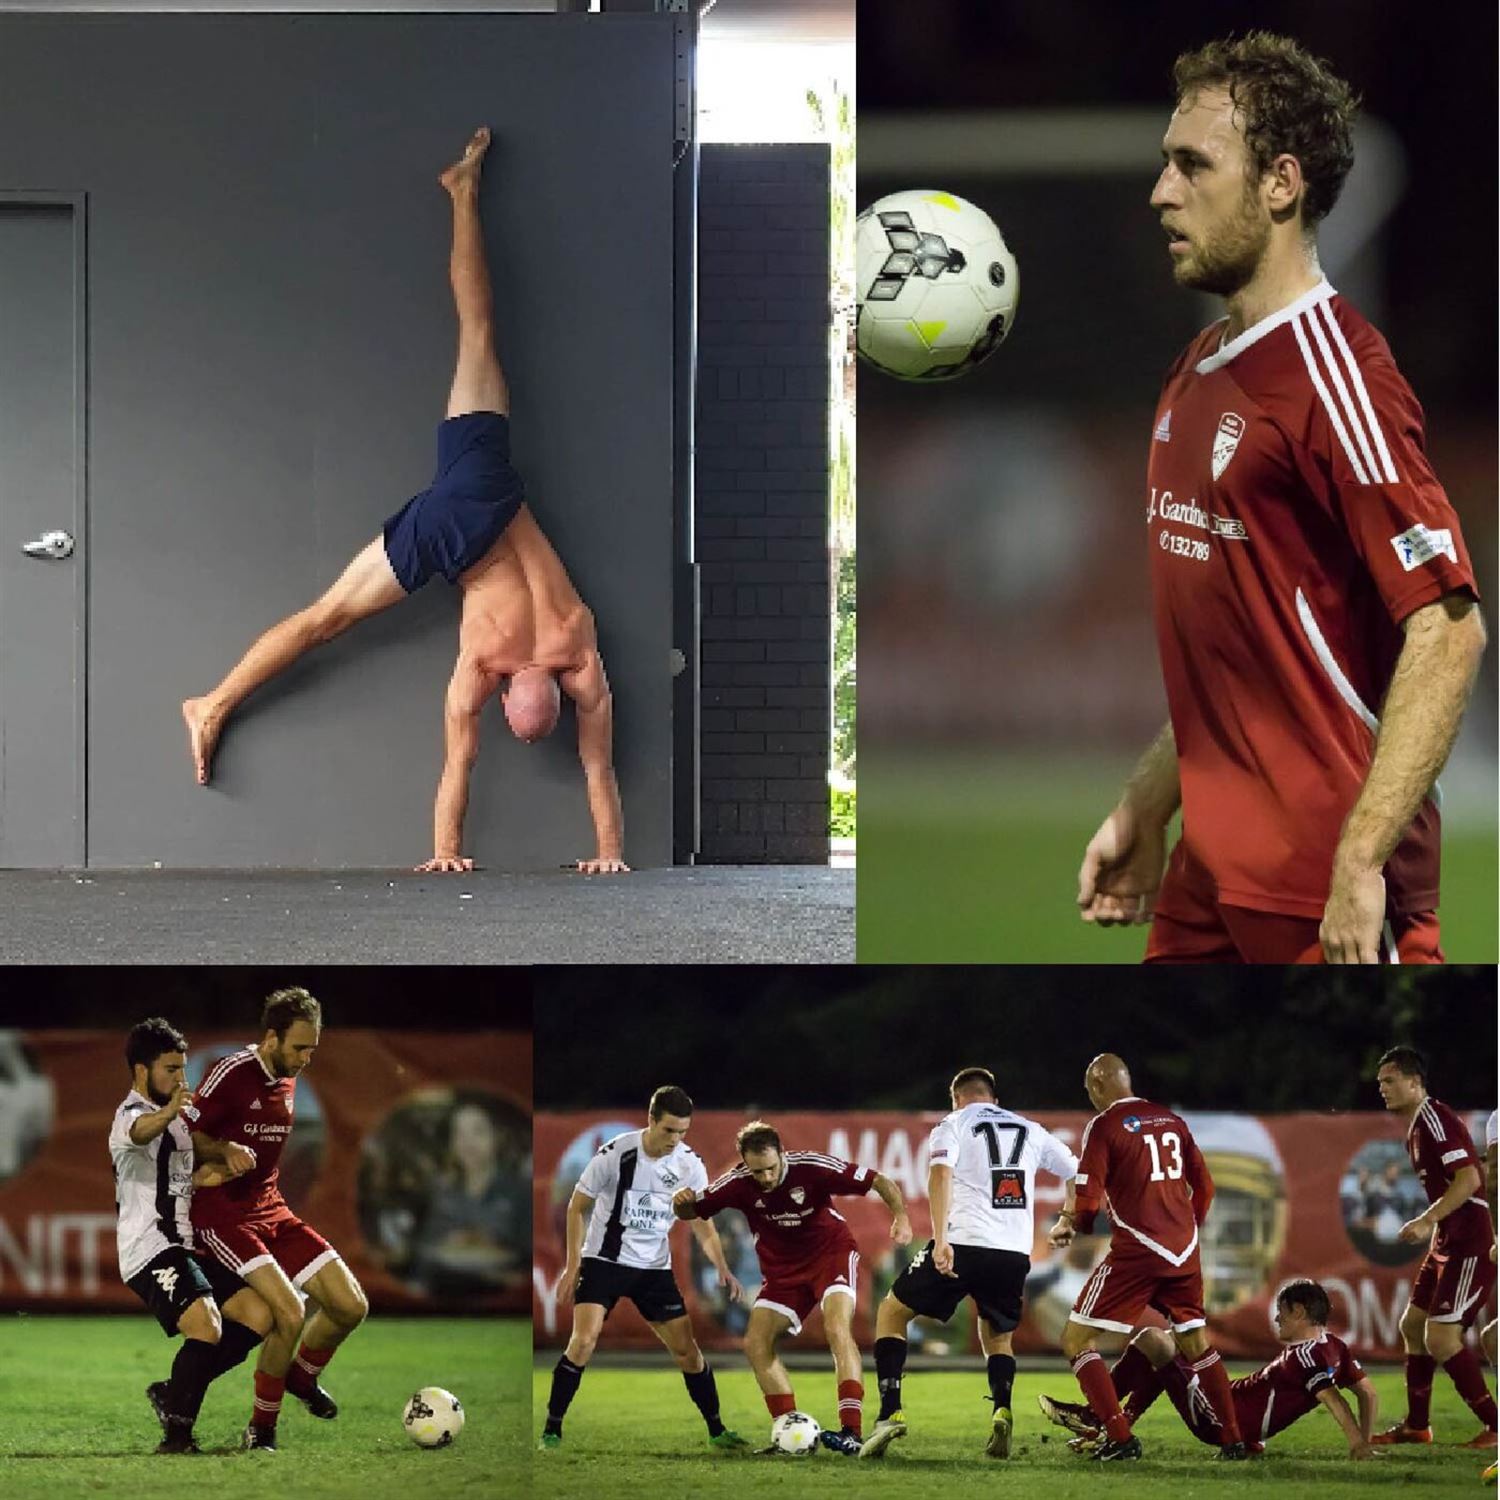 Giving up handstands & soccer